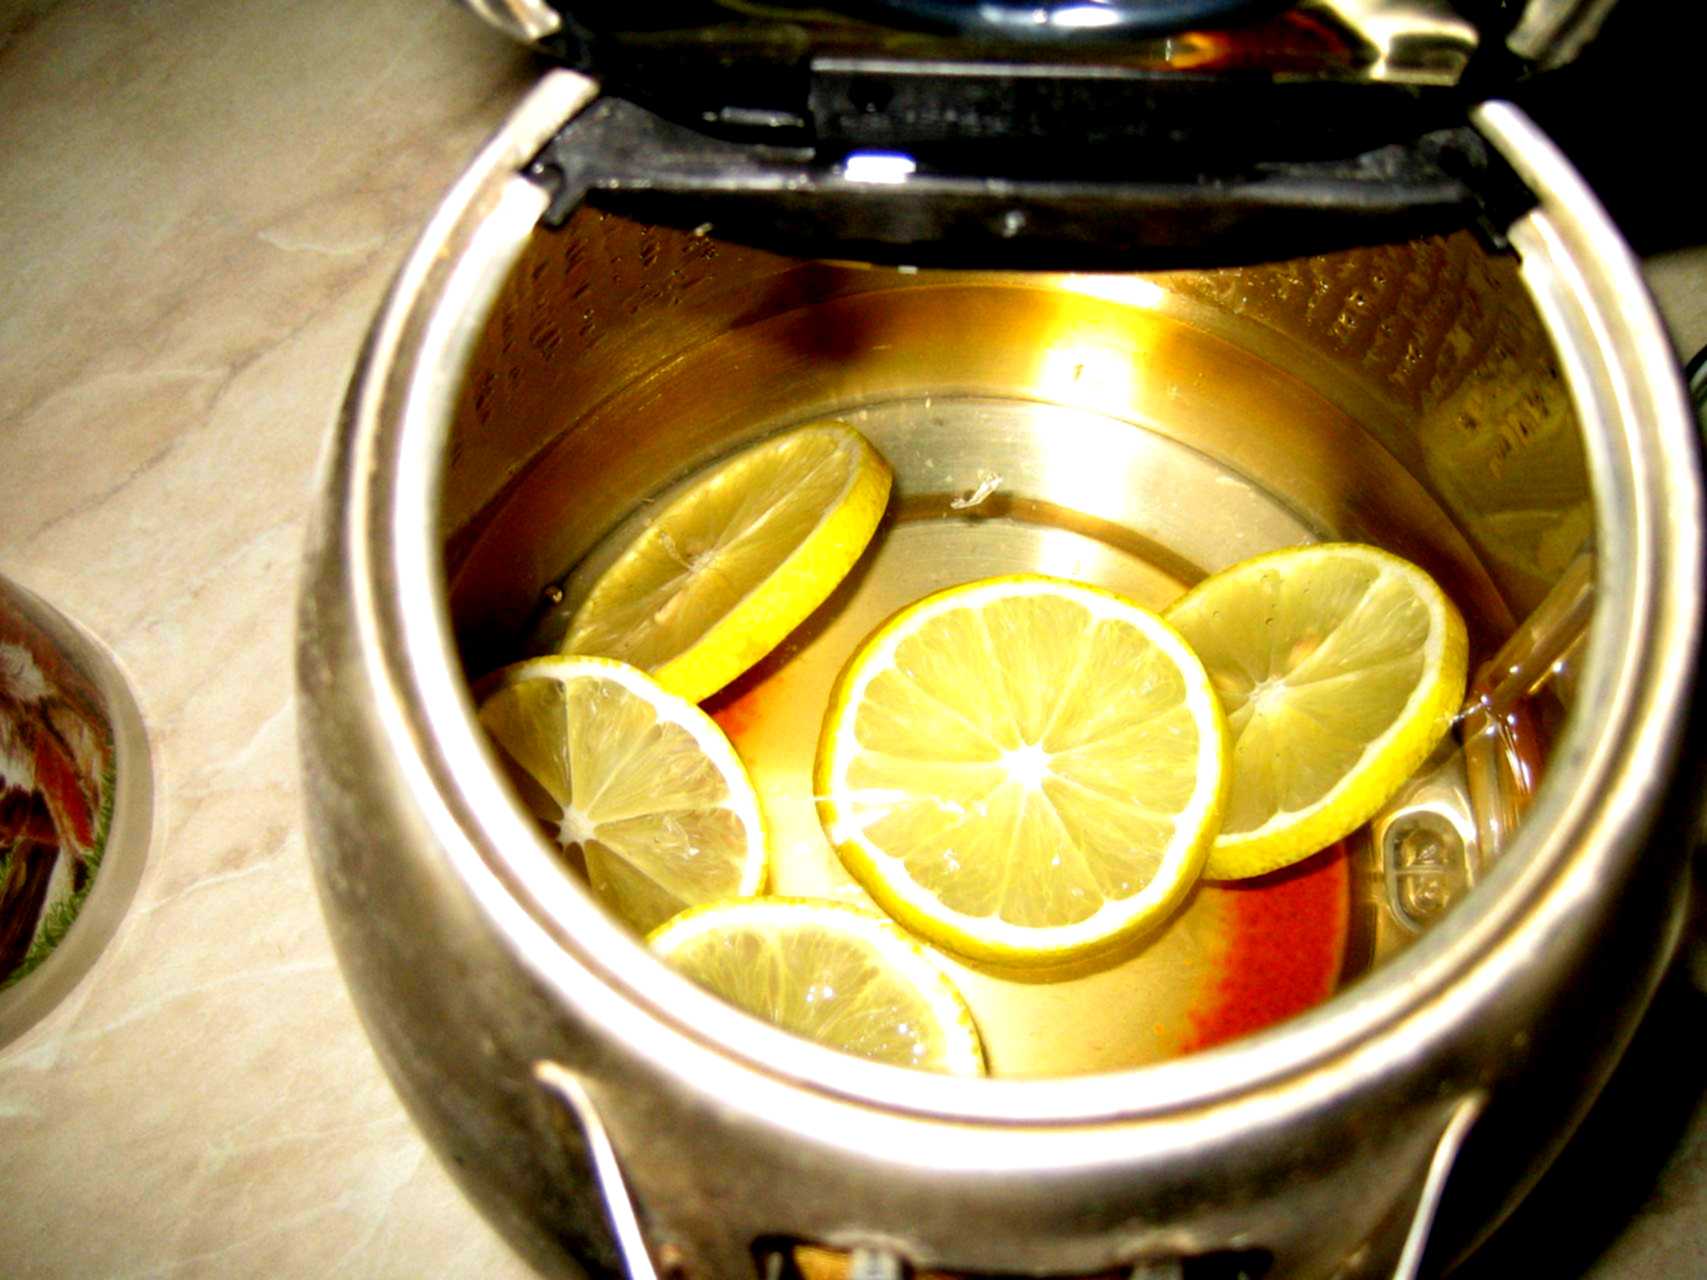 Отмыть чайник от накипи лимонной. Лимон от накипи. Лимон от накипи в чайнике. Накипь в чайнике лимонной кислотой. Очистка чайника от накипи лимонной кислотой.